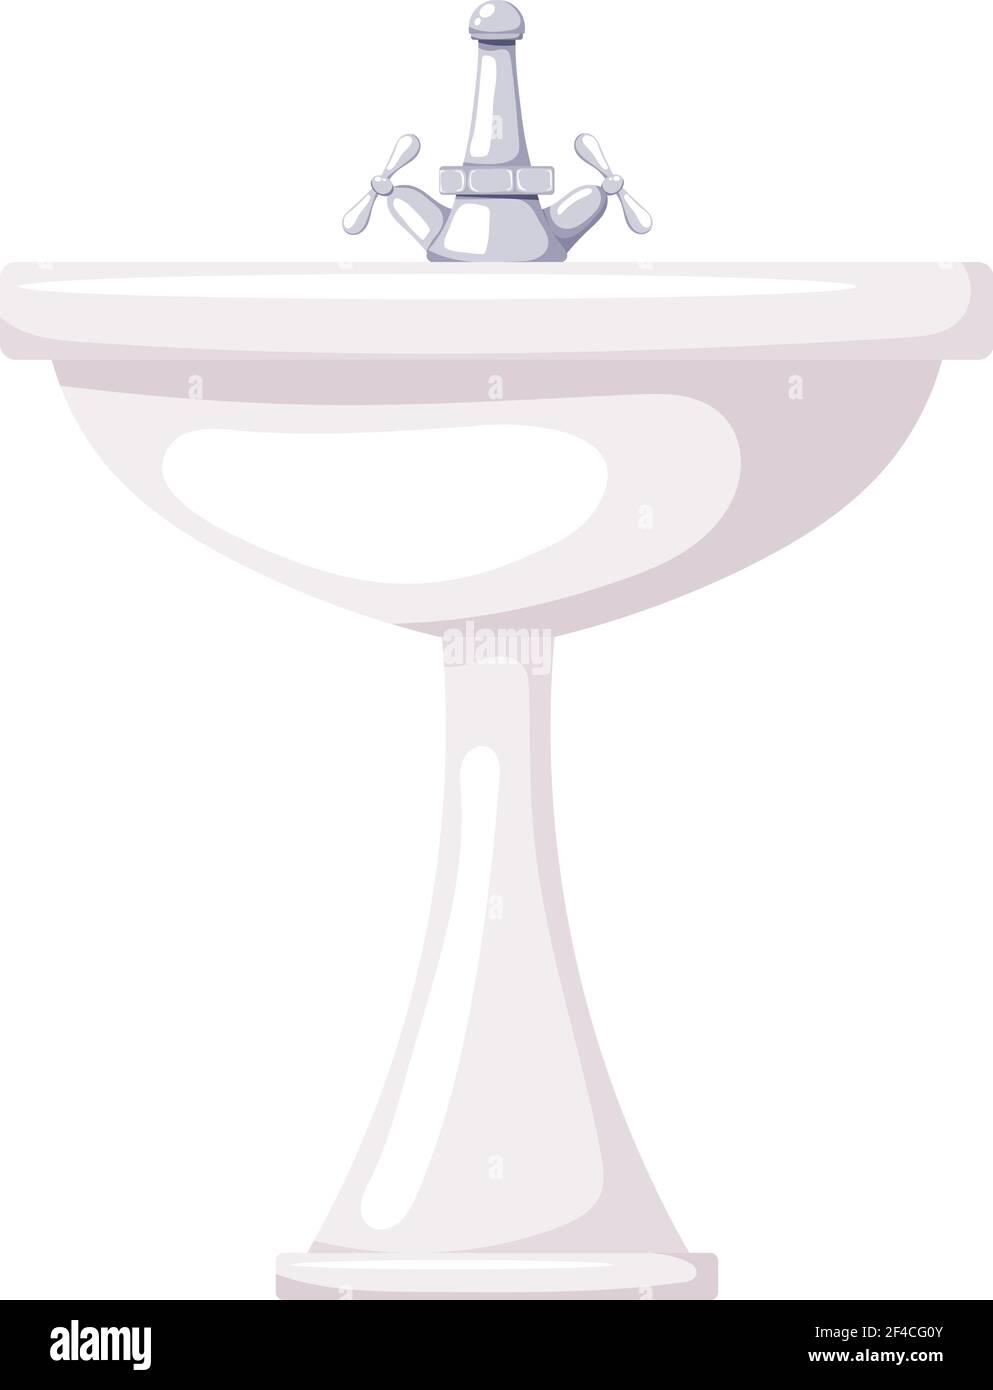 Vektor-Illustration eines Keramik-Waschbeckens auf weißem Hintergrund. Cartoon Waschbecken mit Wasserhahn. Isolierter Gegenstand. Pflegeprodukt. Badezimmer Stock Vektor